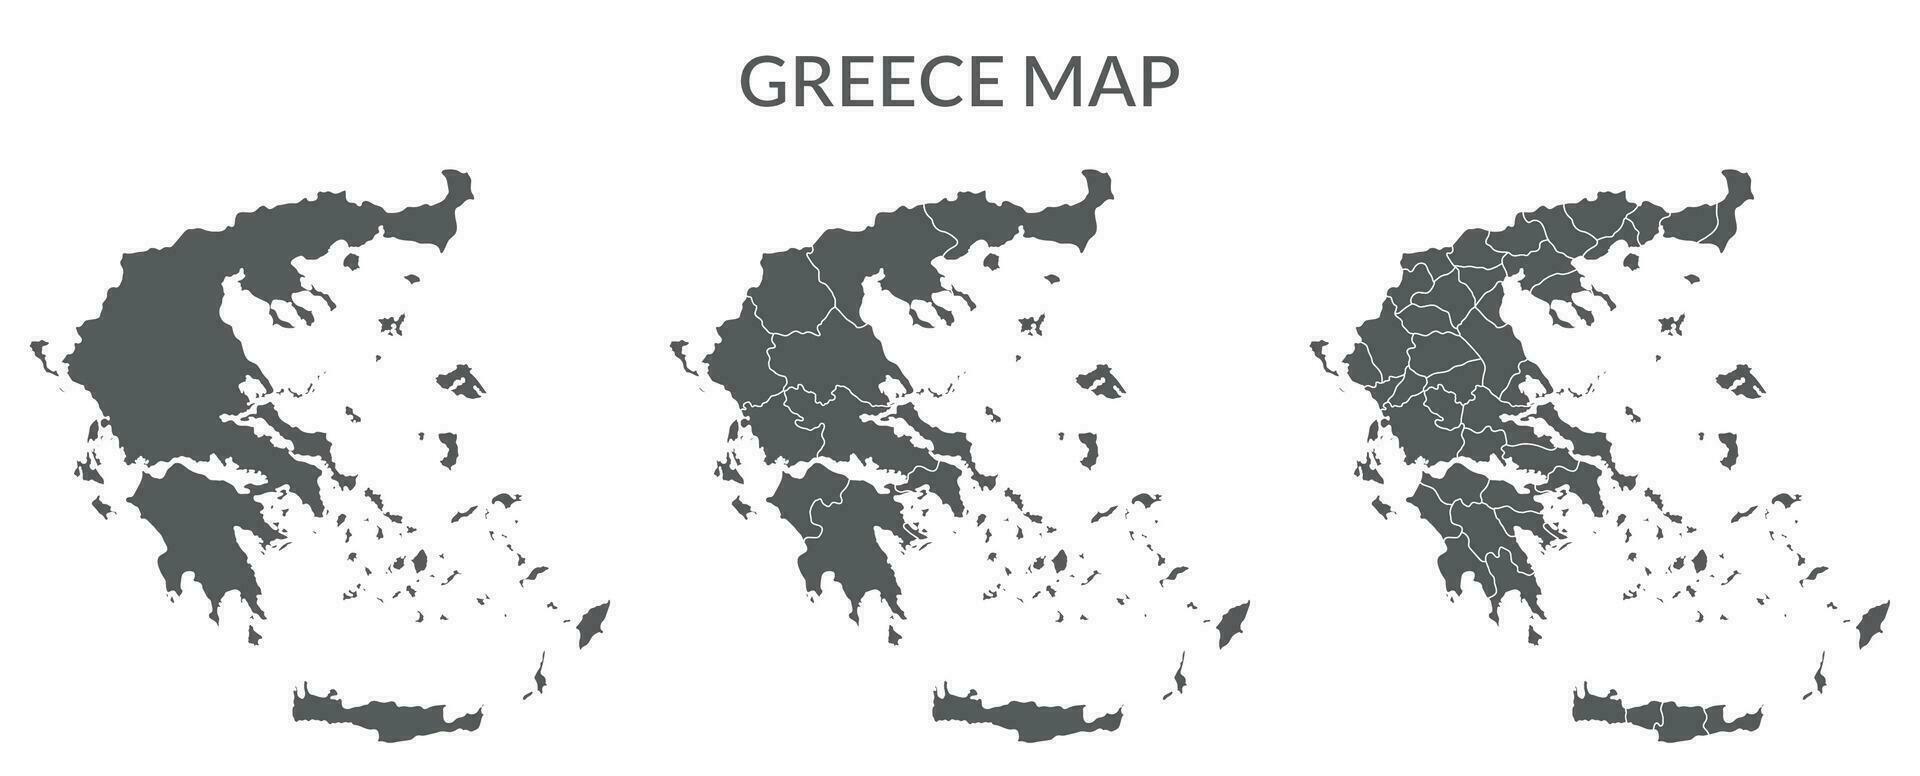 Greece MAP set in grey color vector